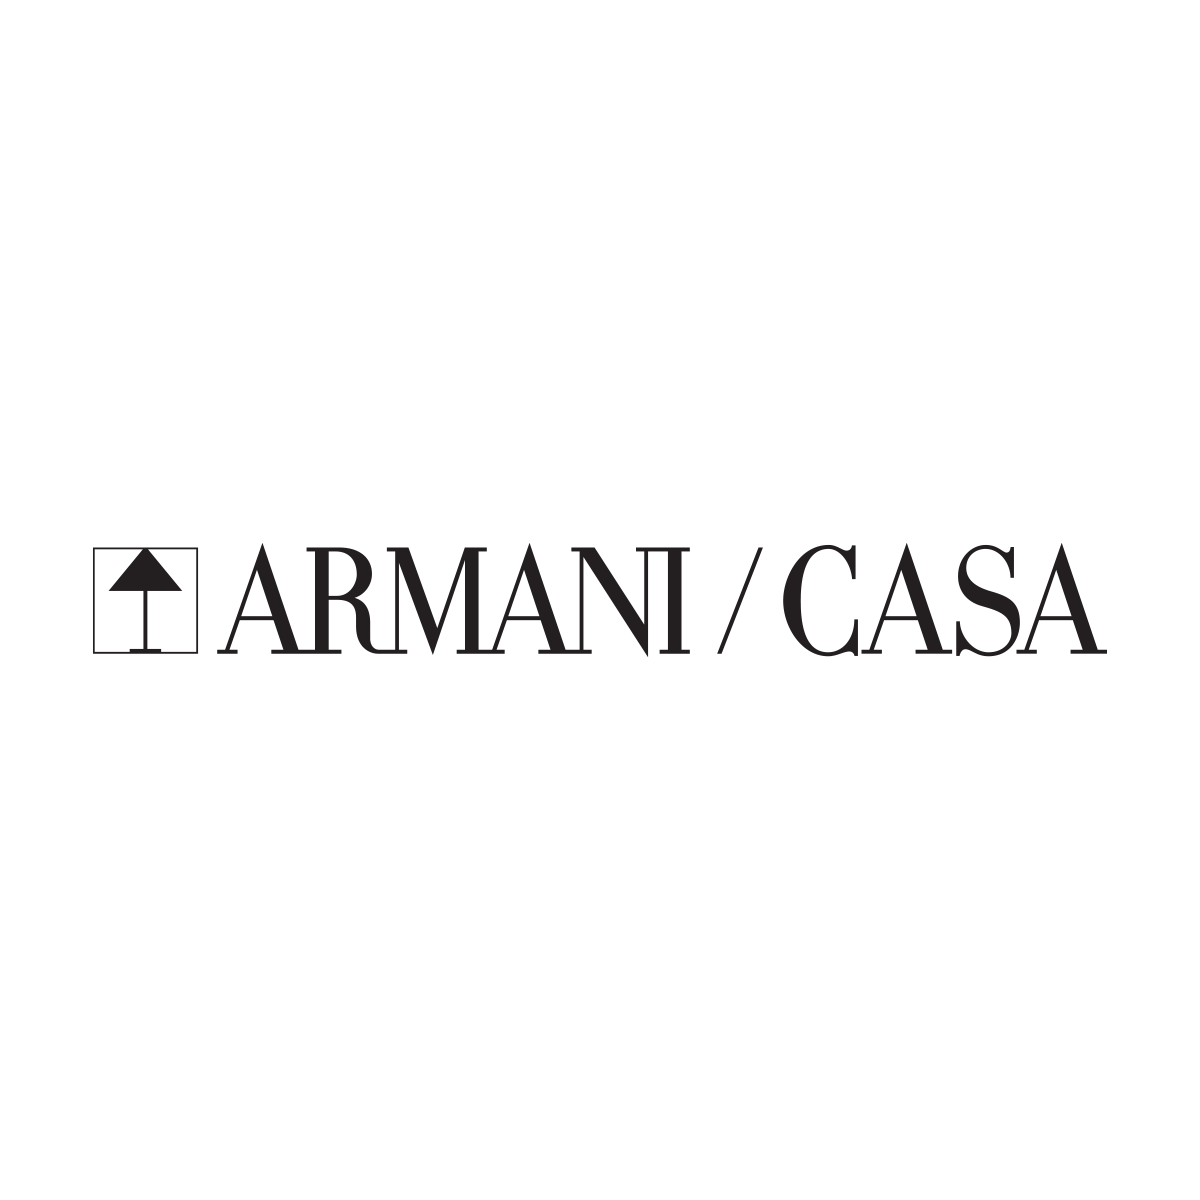 Armani/Casa - Articoli regalo - produzione e ingrosso Milano